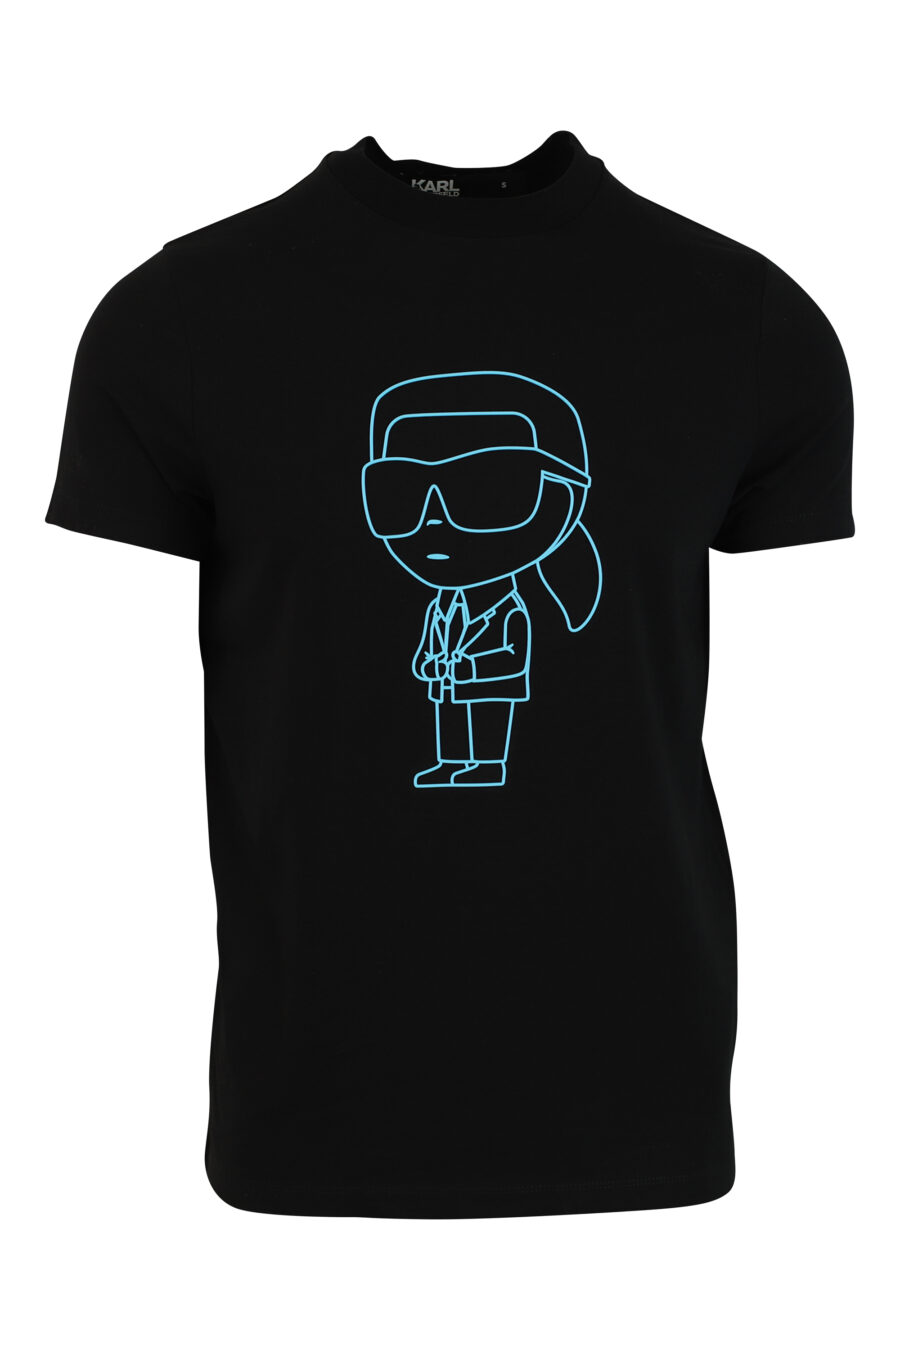 T-shirt preta com maxilogo em silhueta azul - 4062226292504